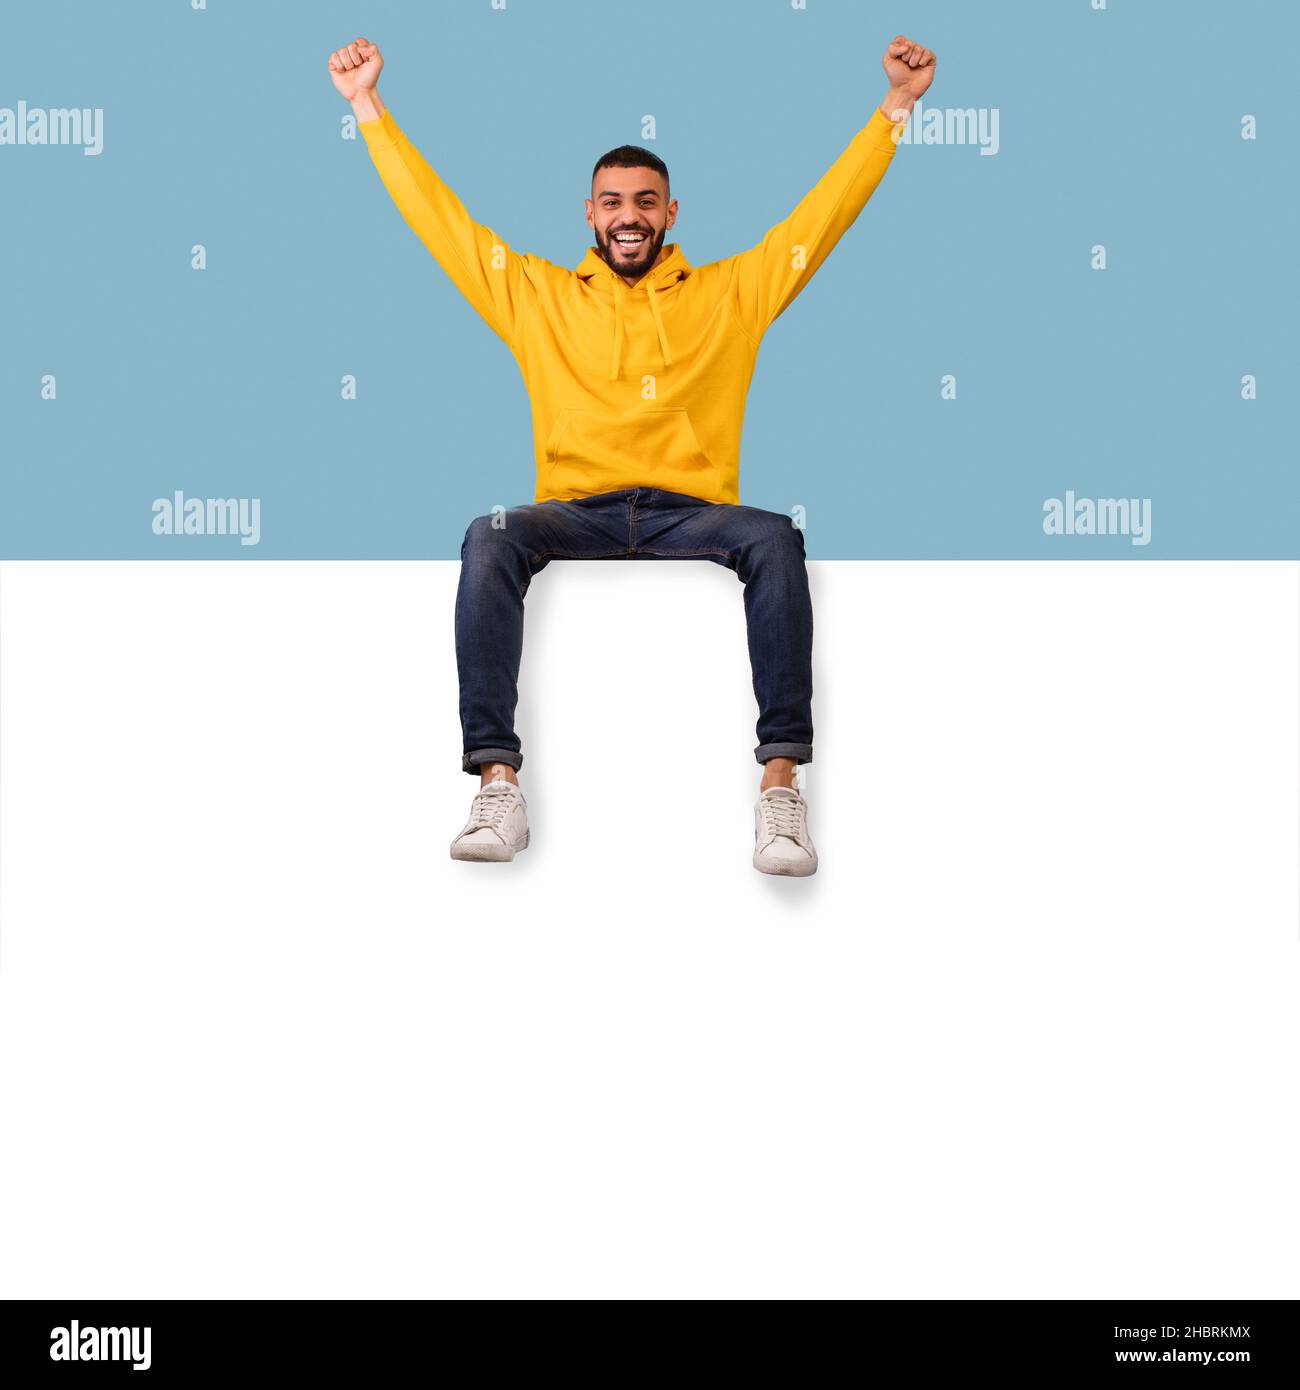 Modèle de panneau publicitaire.Un homme arabe excité assis au-dessus d'une affiche blanche vierge avec une maquette, levant les mains Banque D'Images